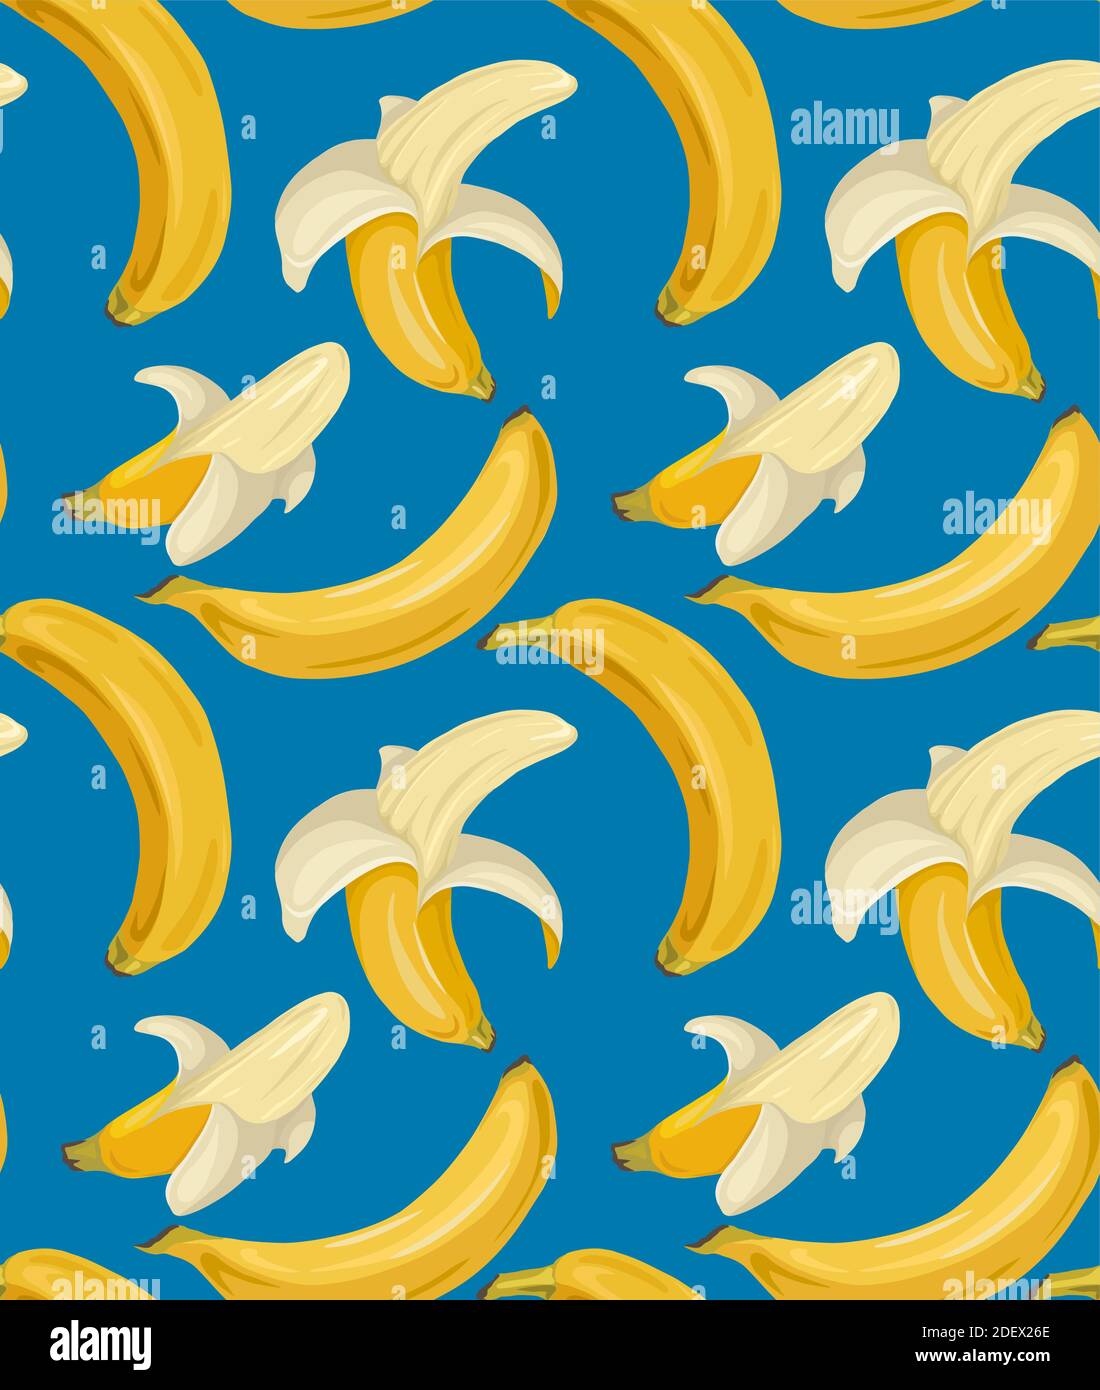 Banana wallpaper bananas Imágenes vectoriales de stock - Página 3 - Alamy